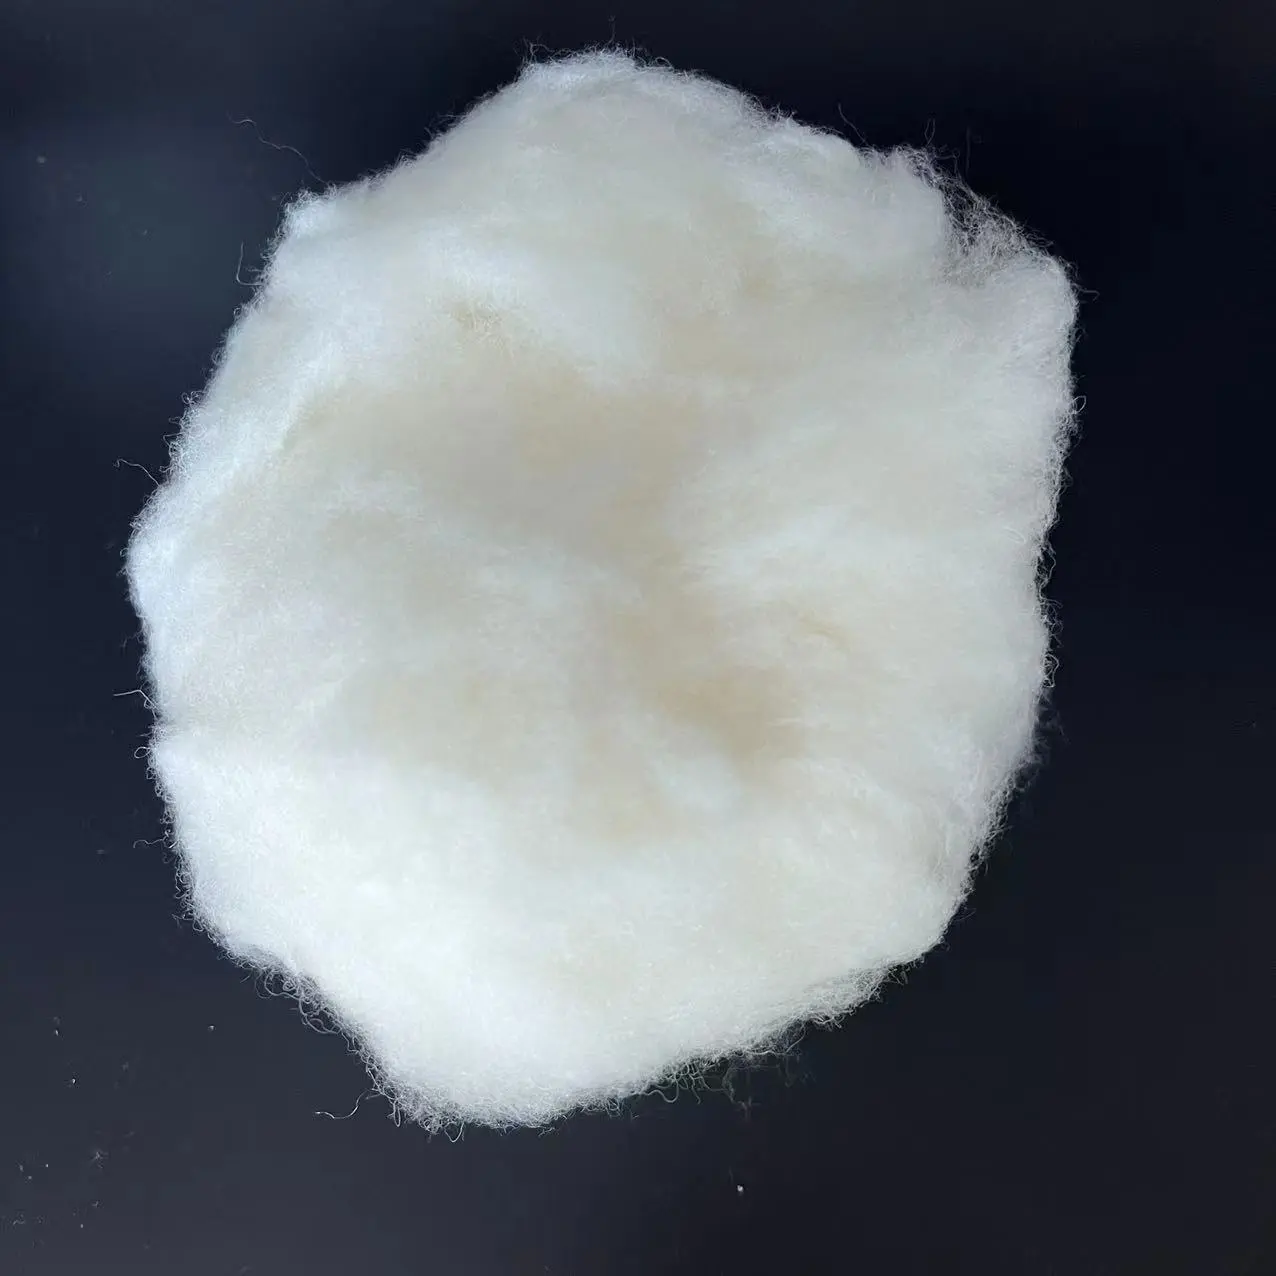 günstigster preis super-gewaschenes kaschmir natürliche 100 % schafwolle gekämmtes kaschmir für spinngarn